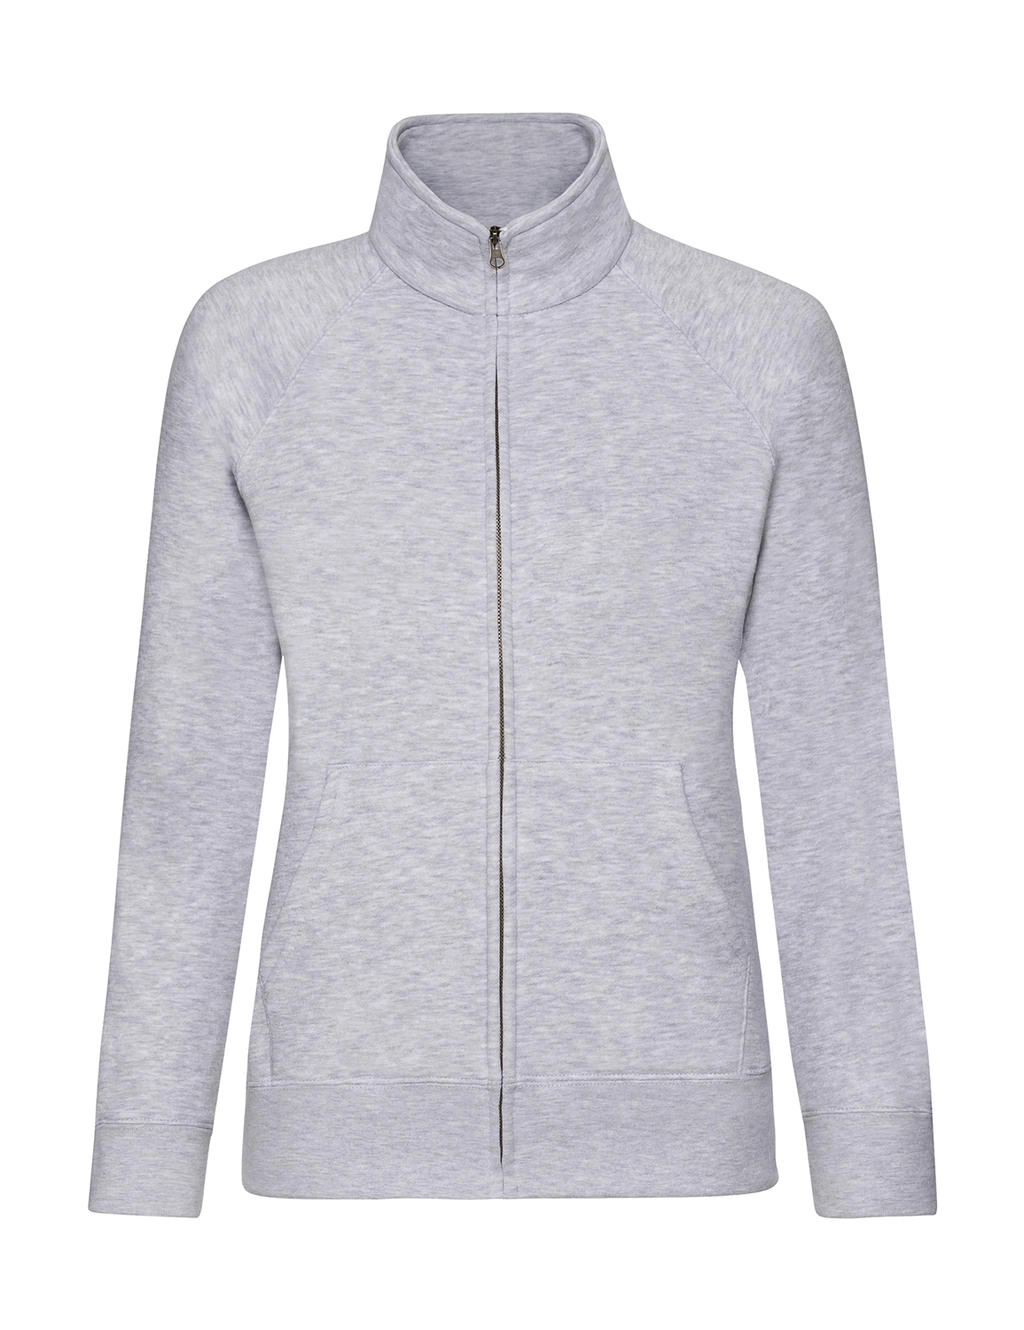 Ladies` Premium Sweat Jacket zum Besticken und Bedrucken in der Farbe Heather Grey mit Ihren Logo, Schriftzug oder Motiv.